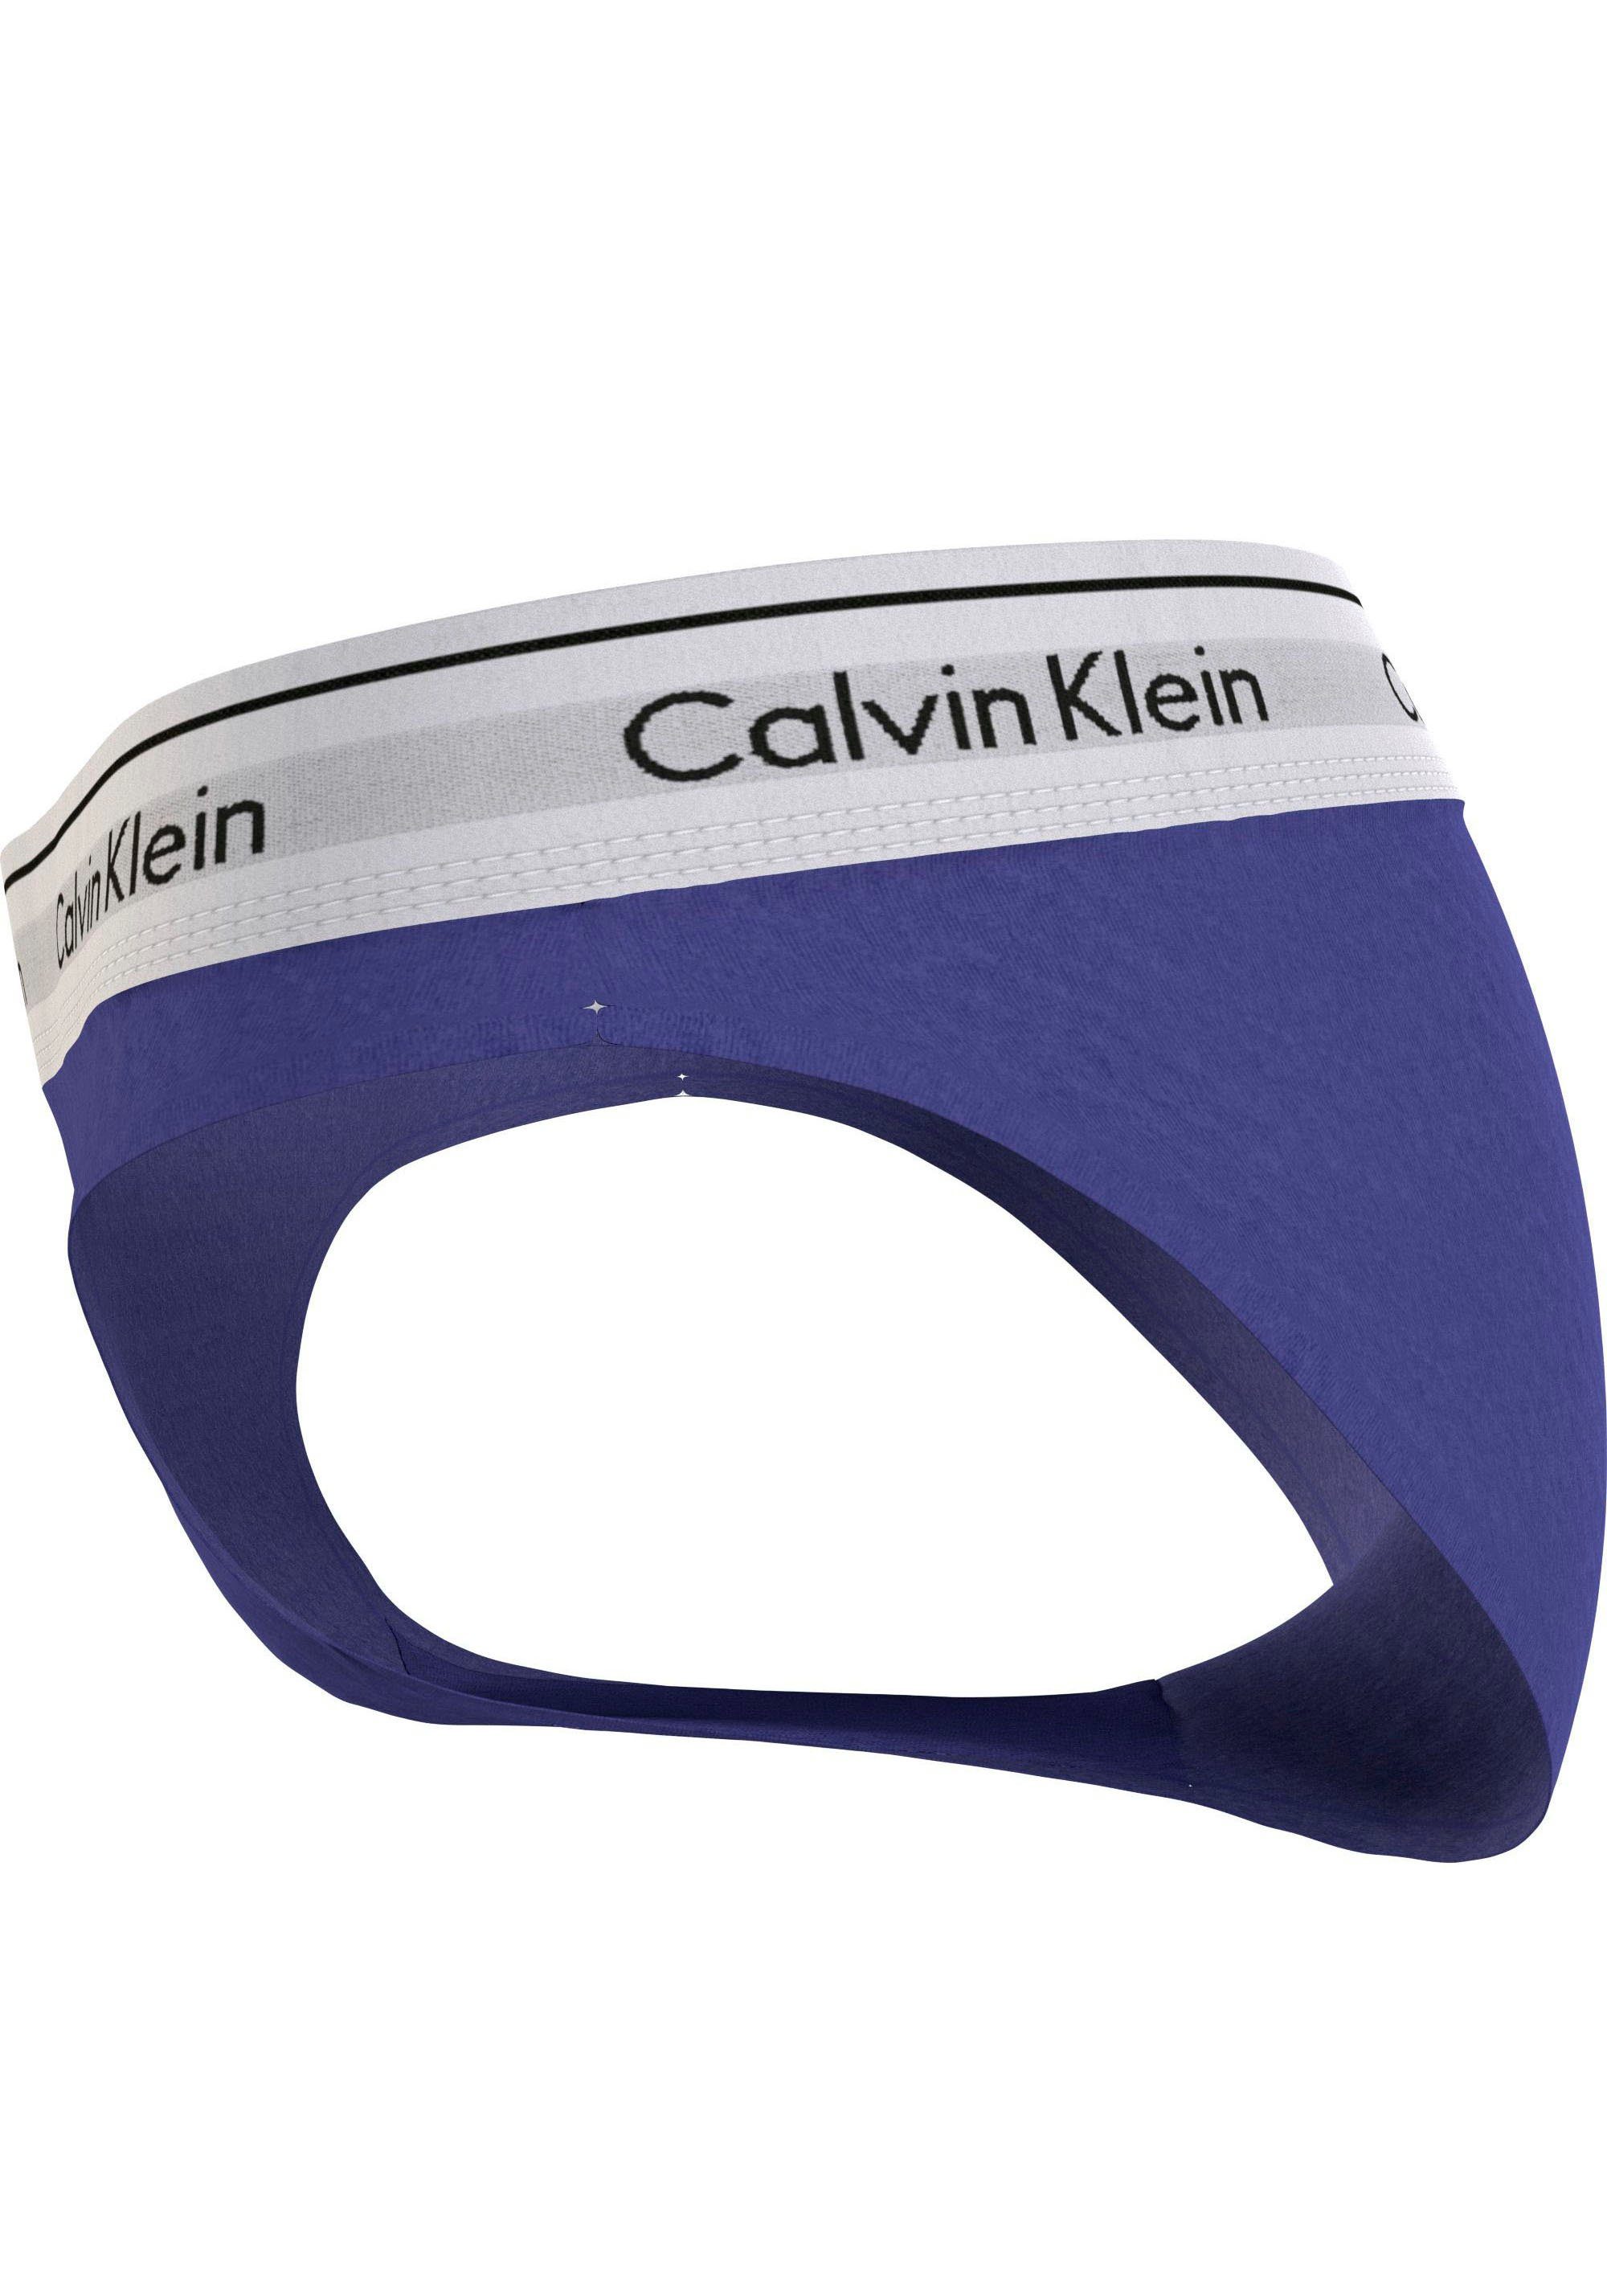 Underwear Klein Bikinislip blau Calvin klassischem Logo BIKINI mit